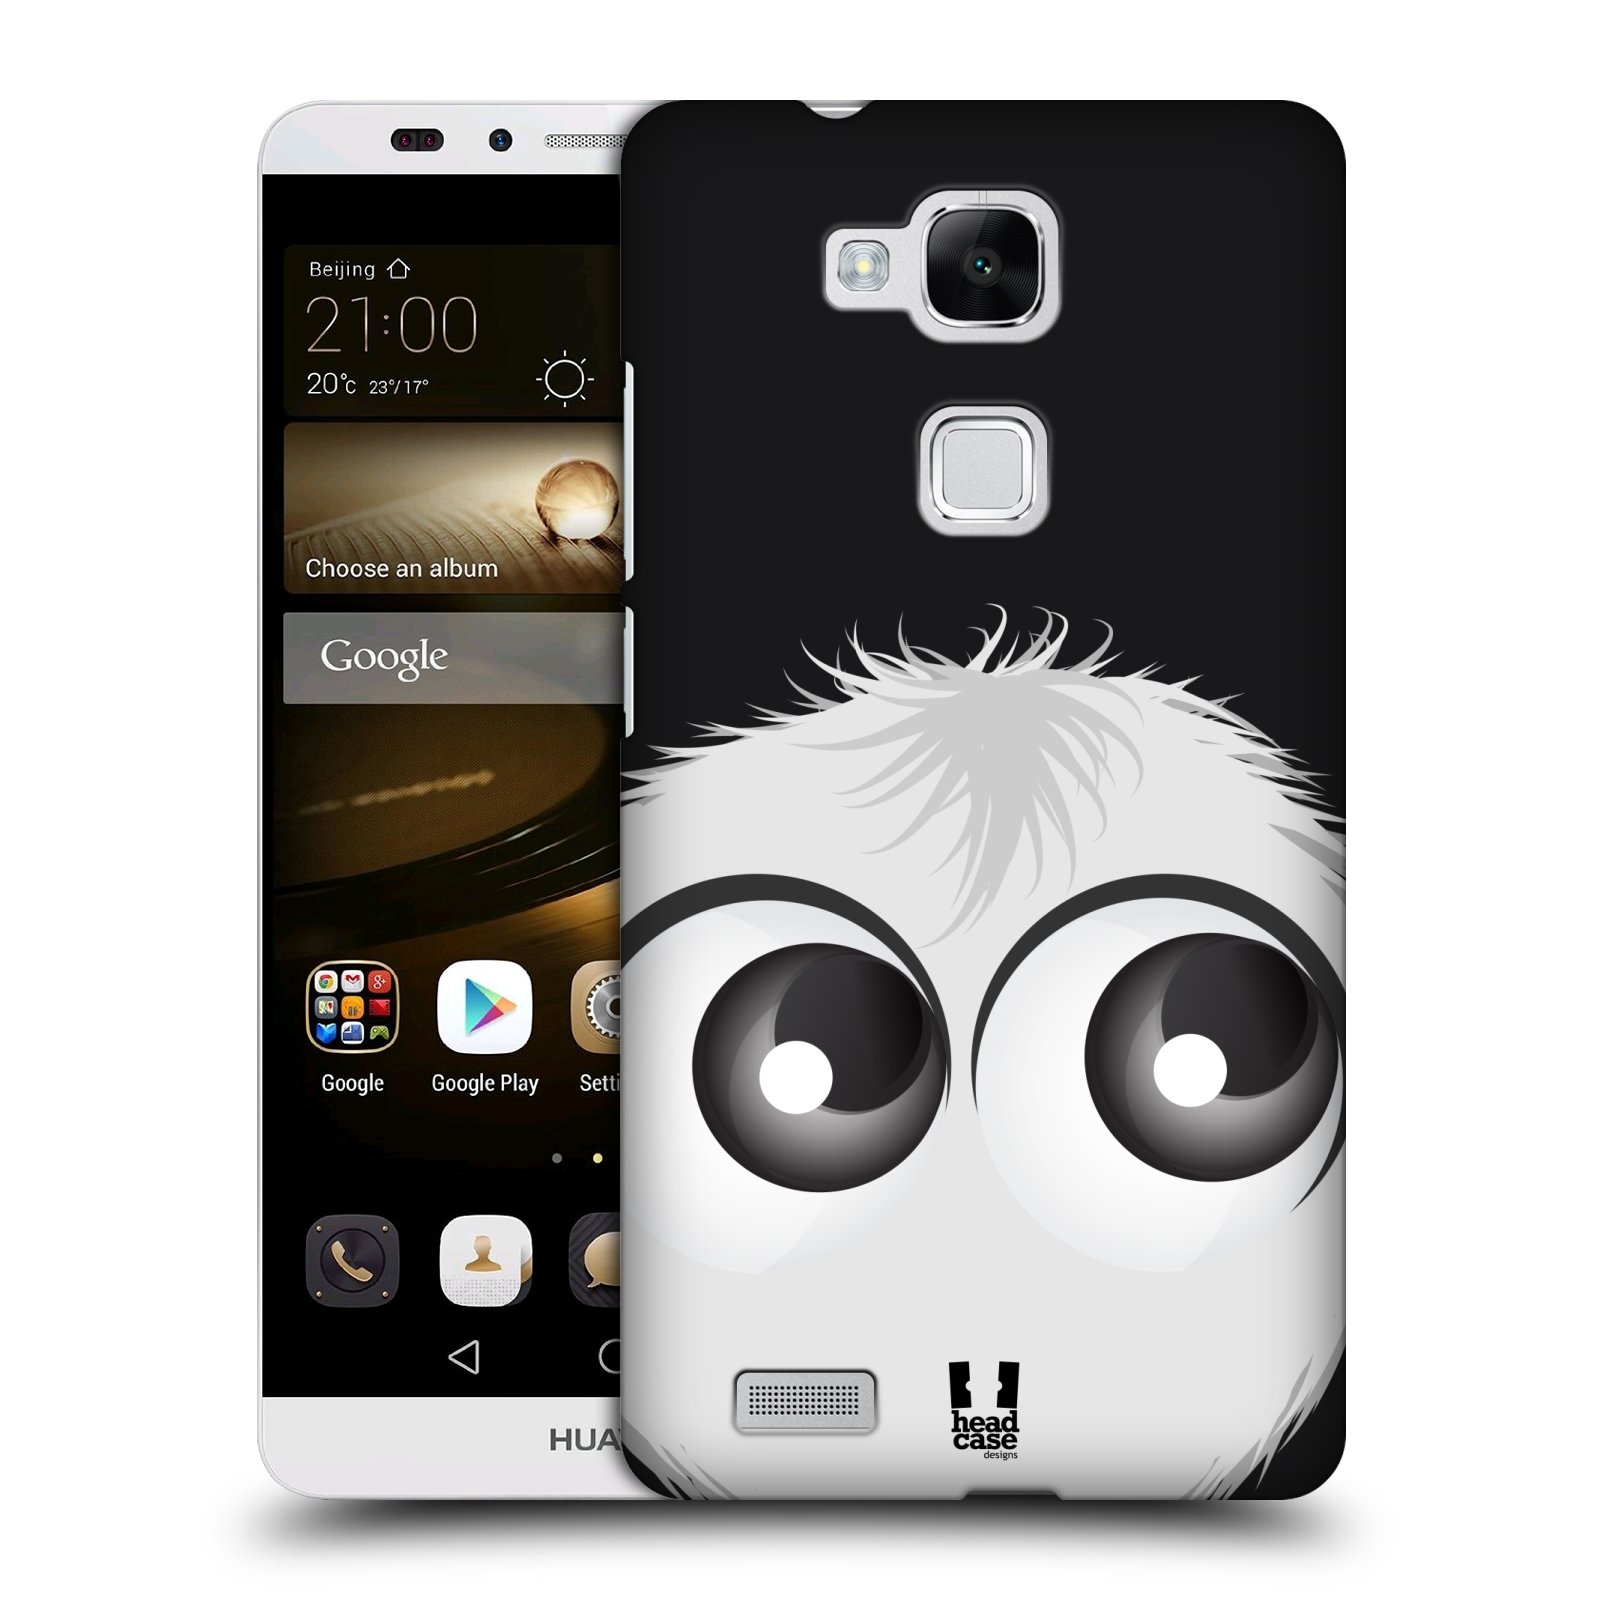 HEAD CASE plastový obal na mobil Huawei Mate 7 vzor Barevný chlupatý smajlík BÍLÁ černé pozadí